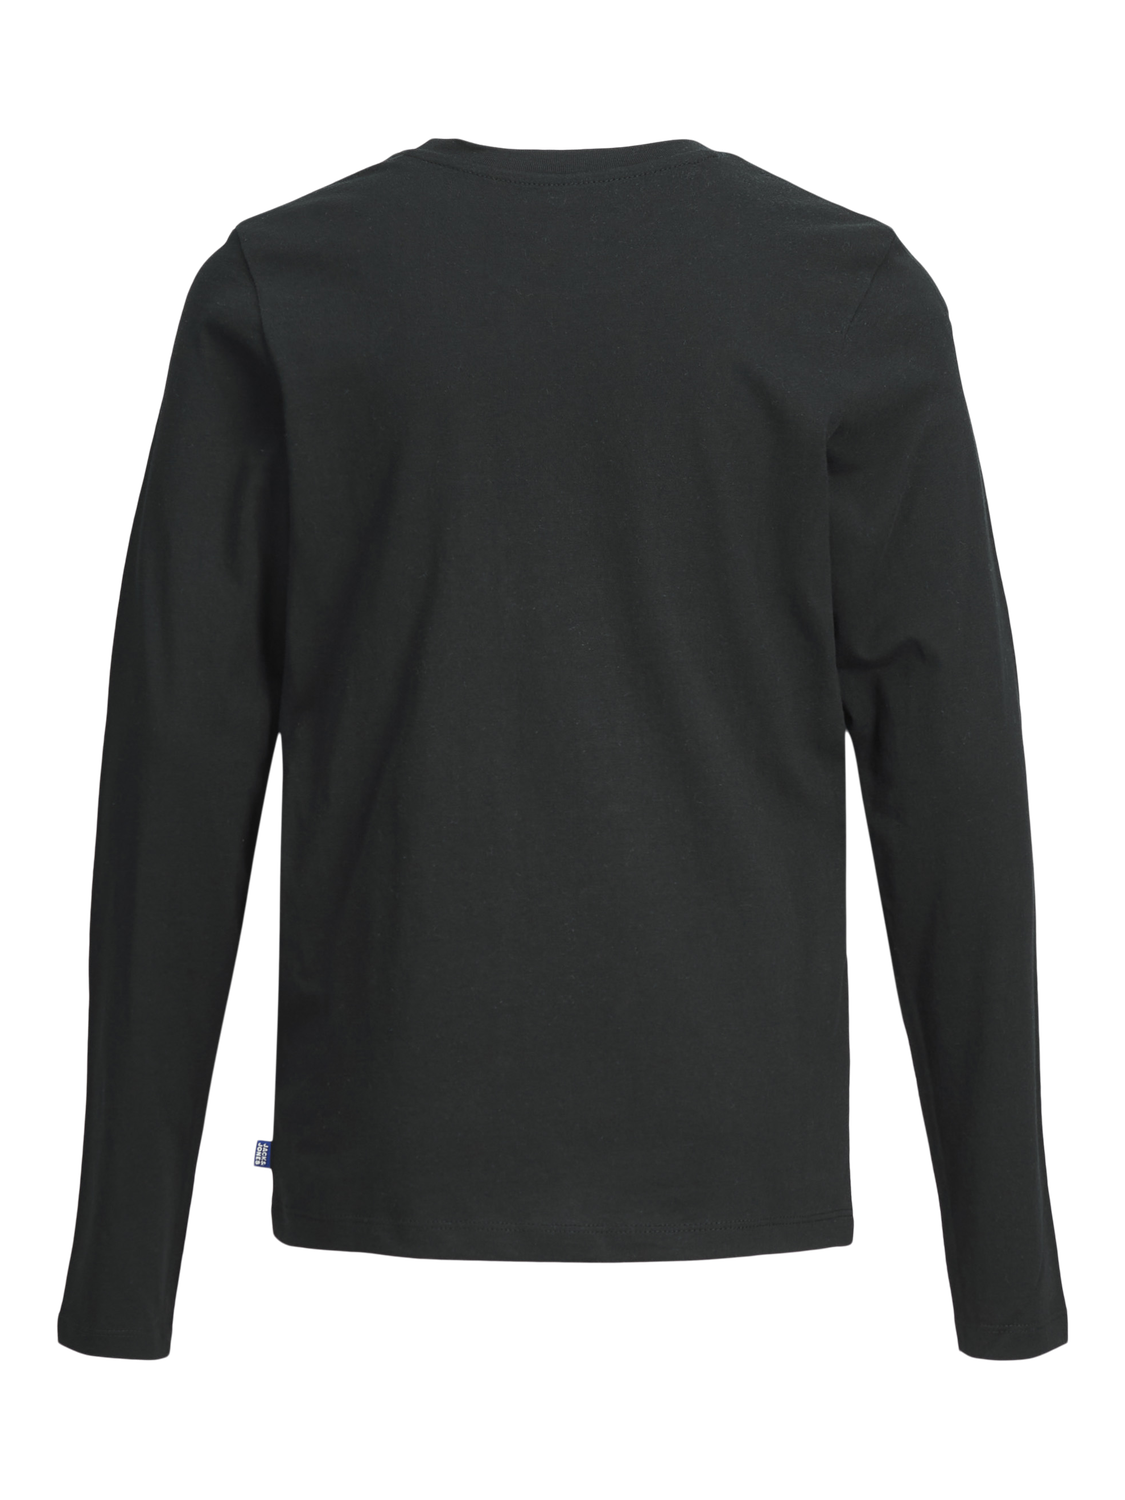 Jack & Jones Plain T-shirt Mini -Black - 12257381